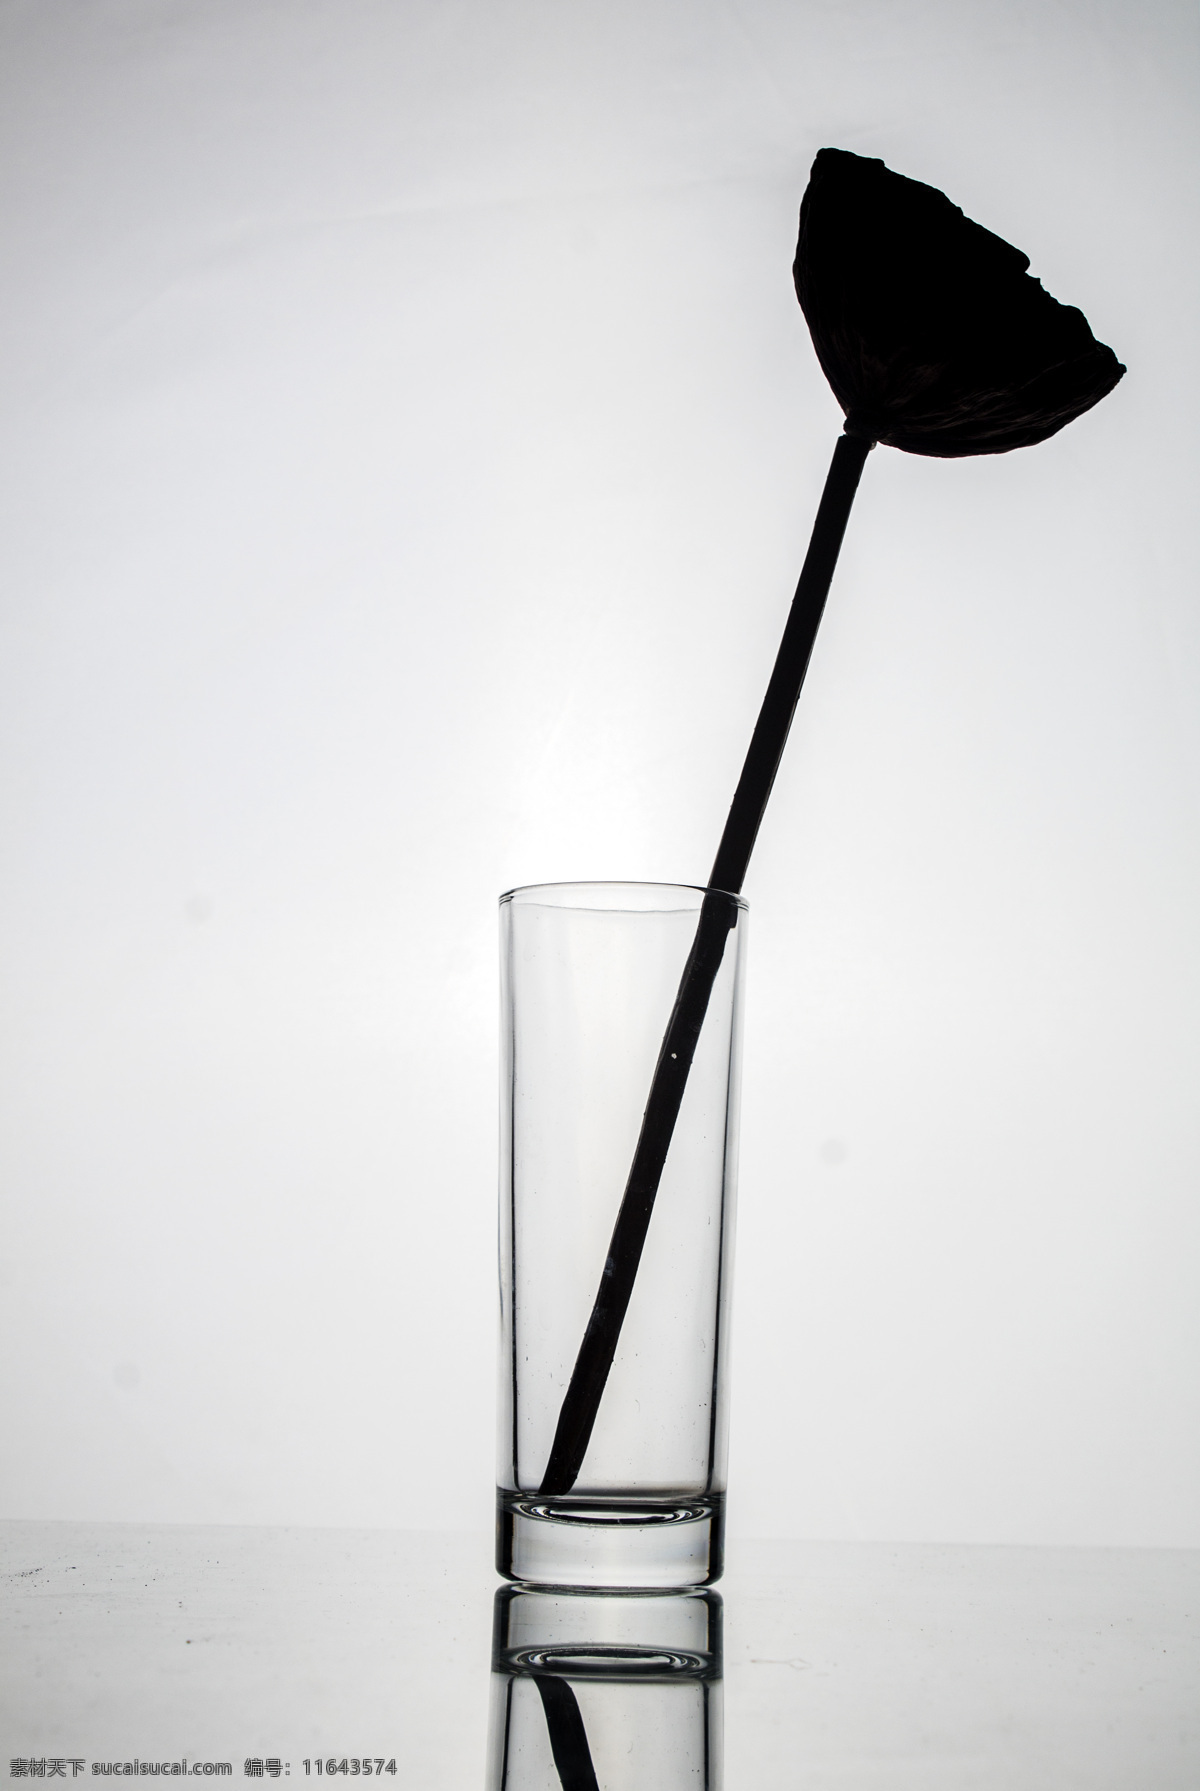 杯子 玻璃杯 商用 黑白 玻璃 日常用品 黑白照片 线条 简约